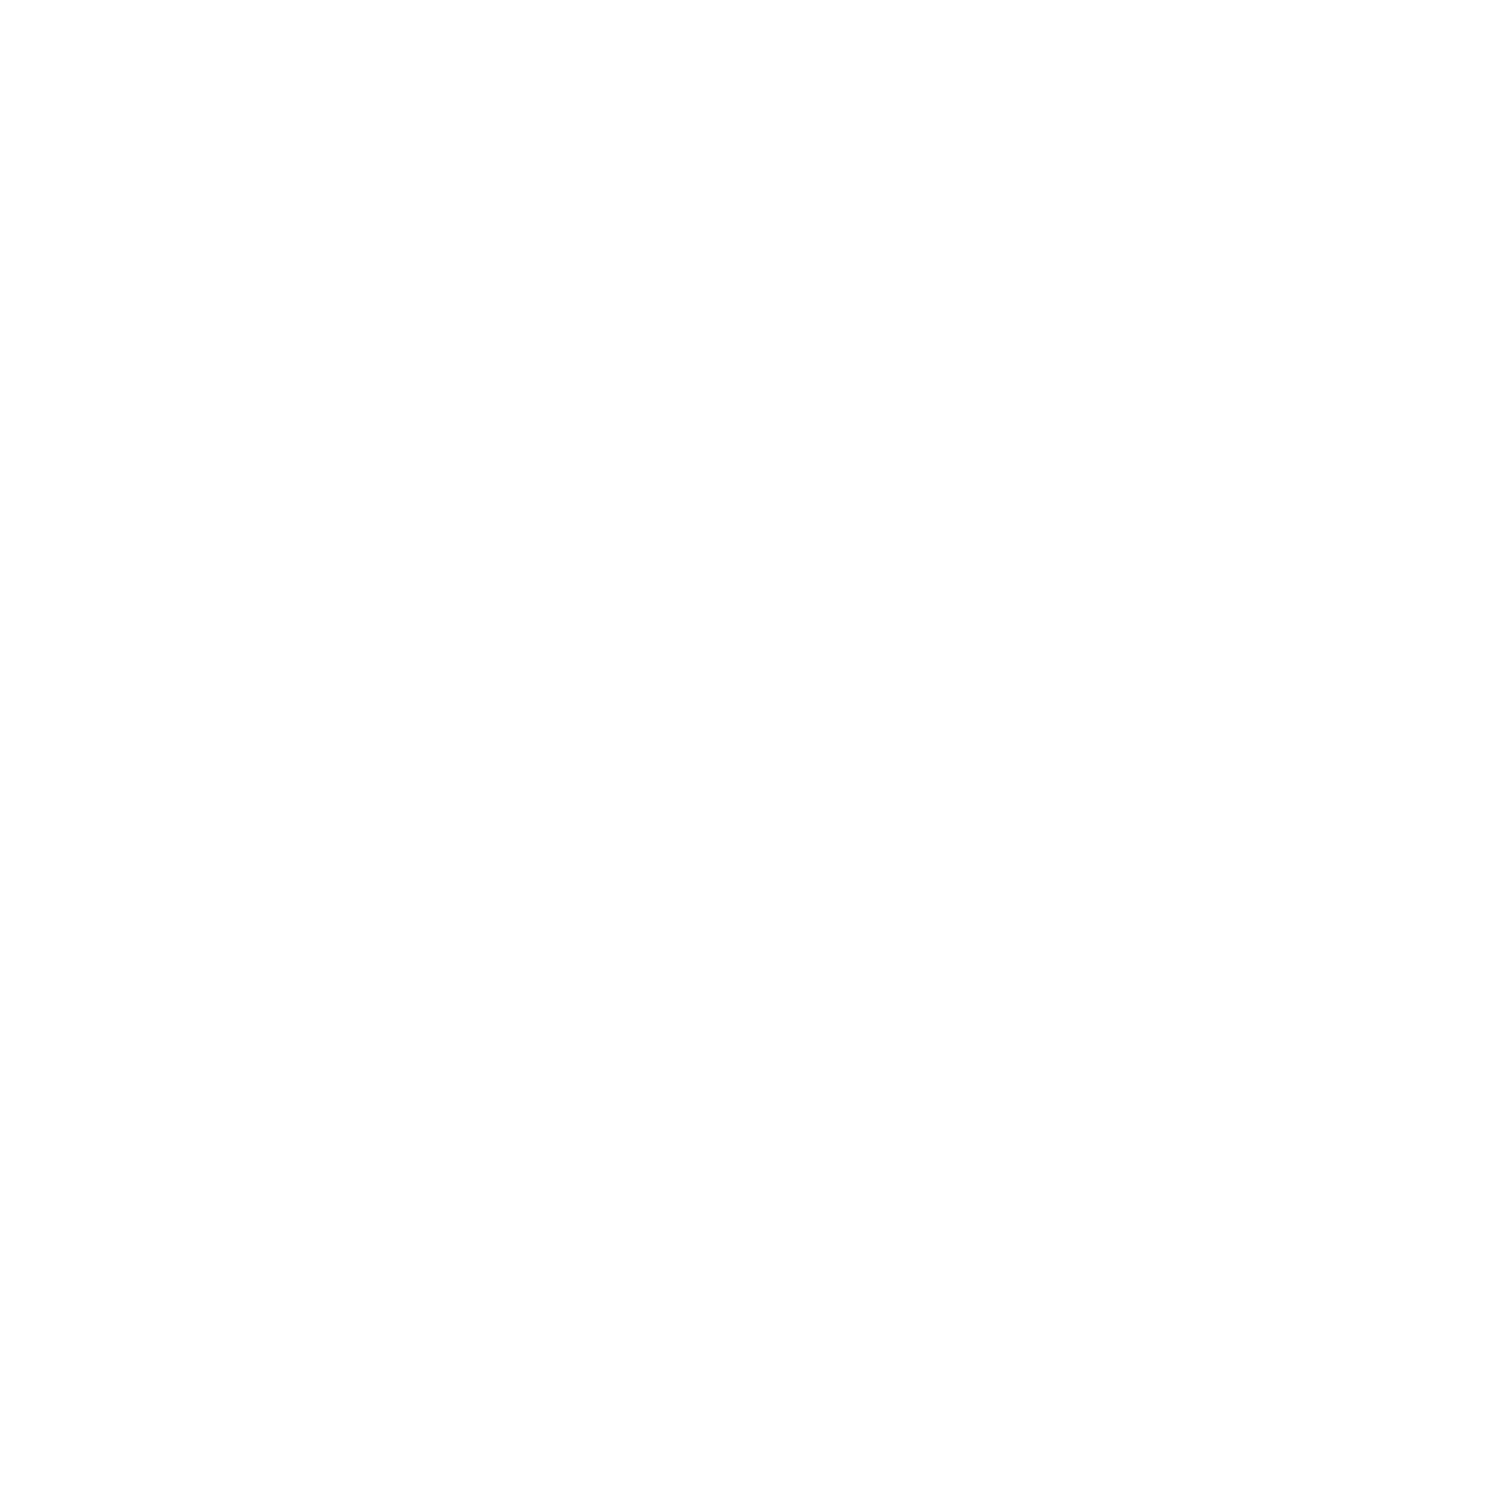 Weathernews Inc. logo for dark backgrounds (transparent PNG)